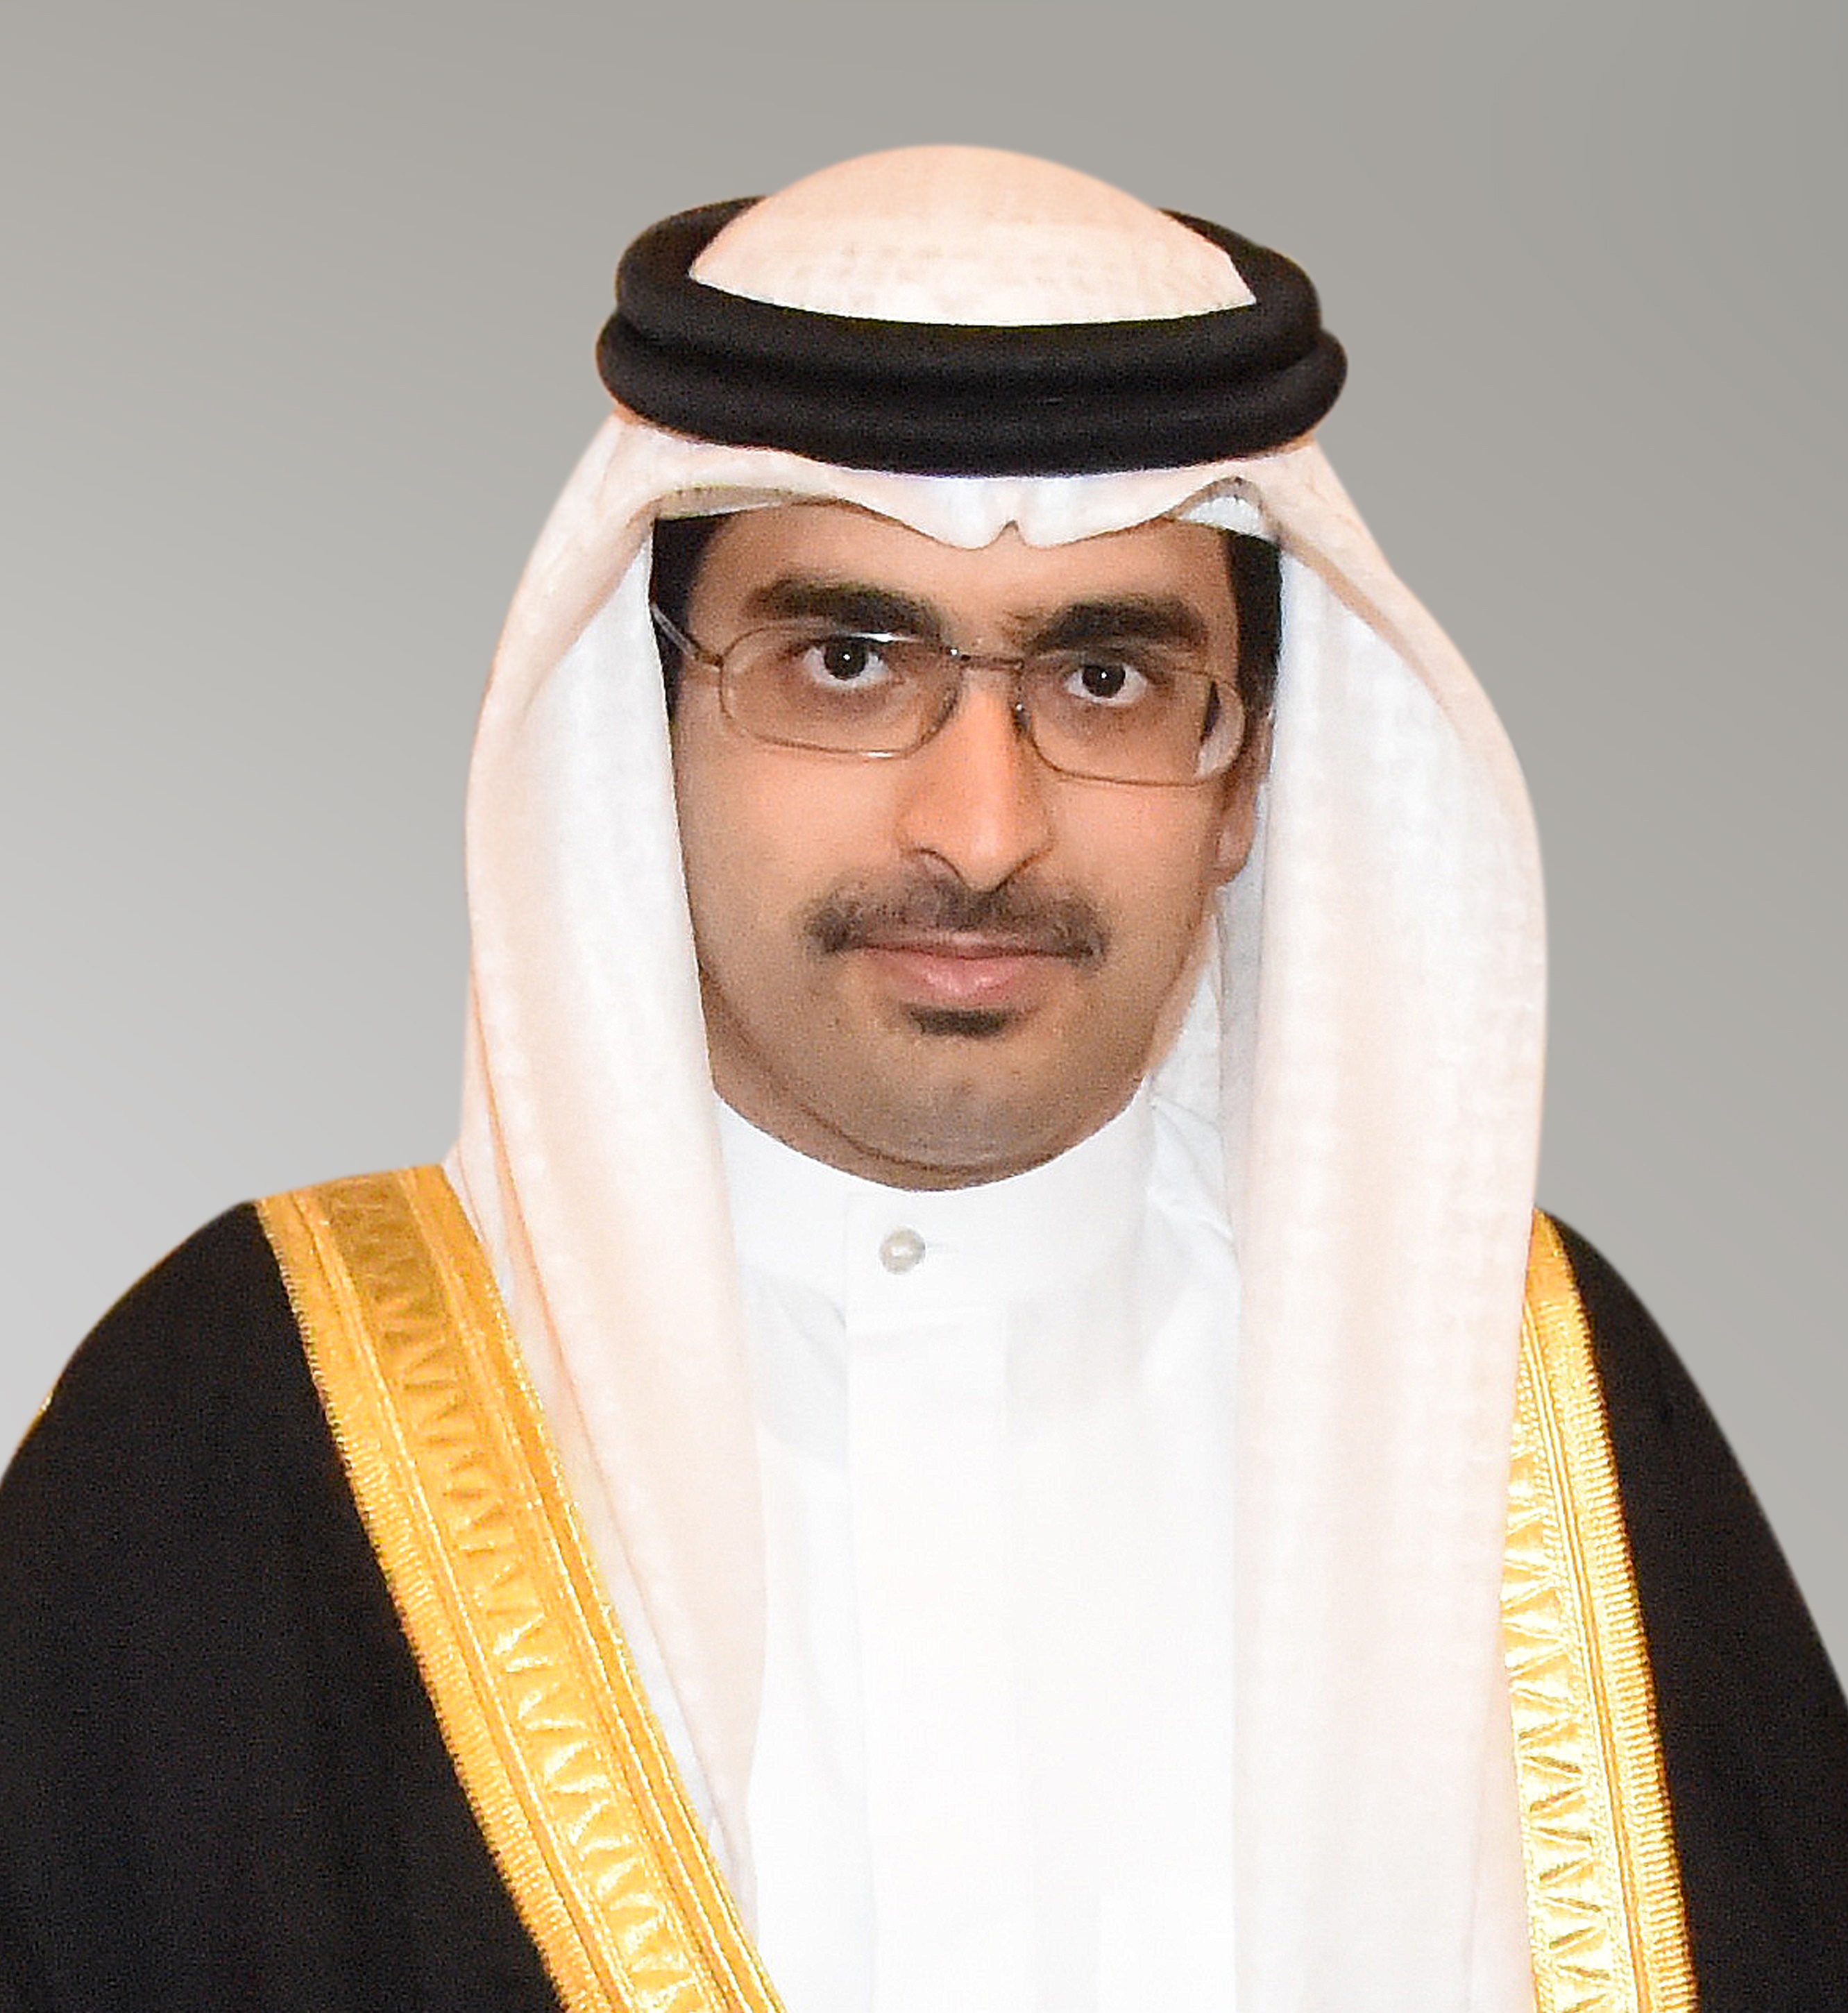 Khalifa bin Ali bin Khalifa Al Khalifa